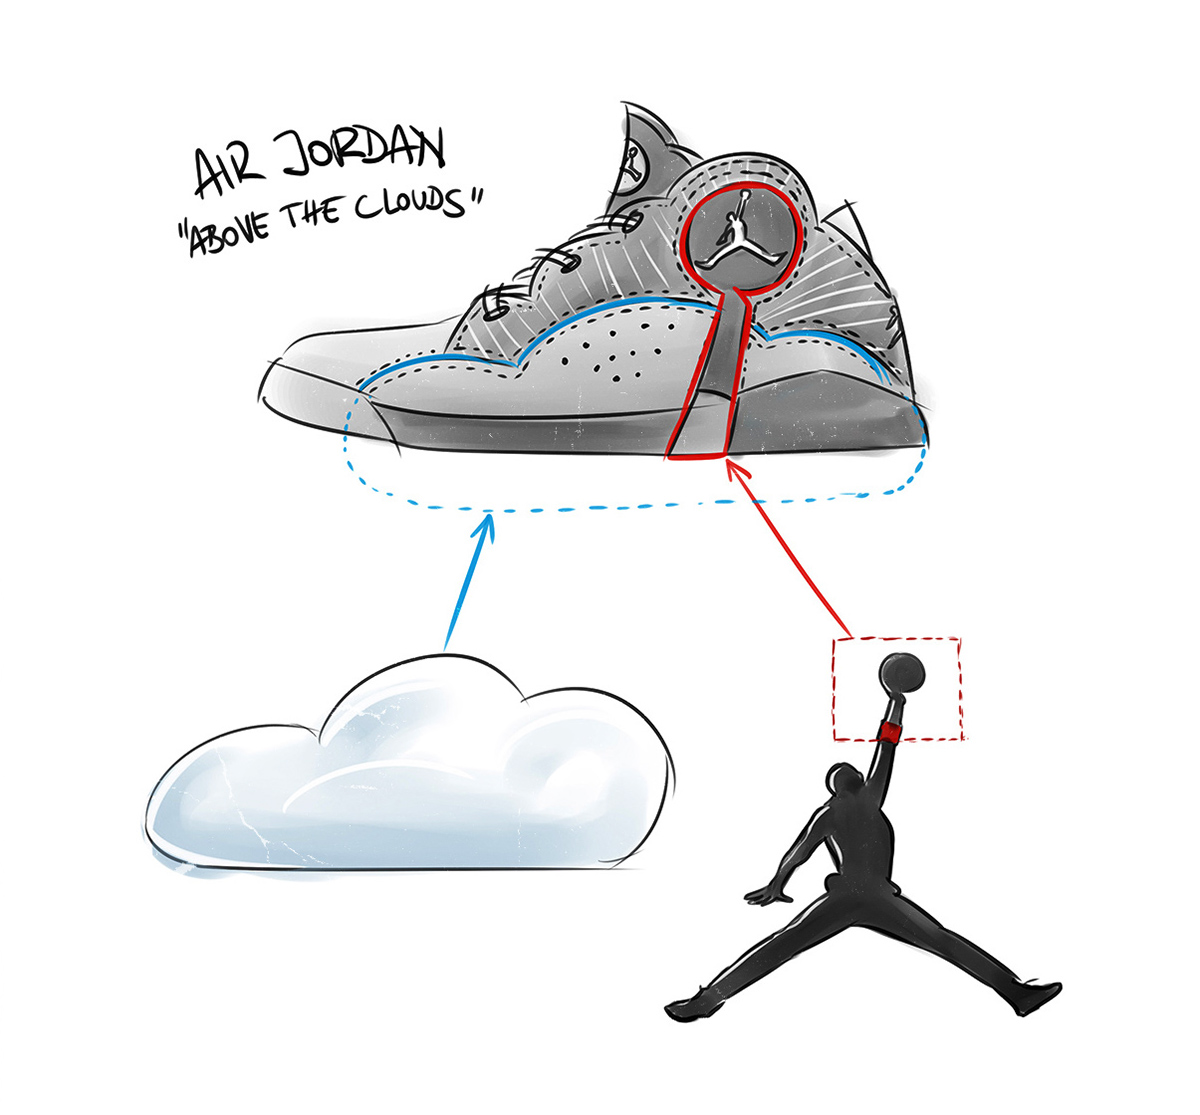 jordan michael air Nike basketball footwear cloud SKY Fly jump jumpman kicks